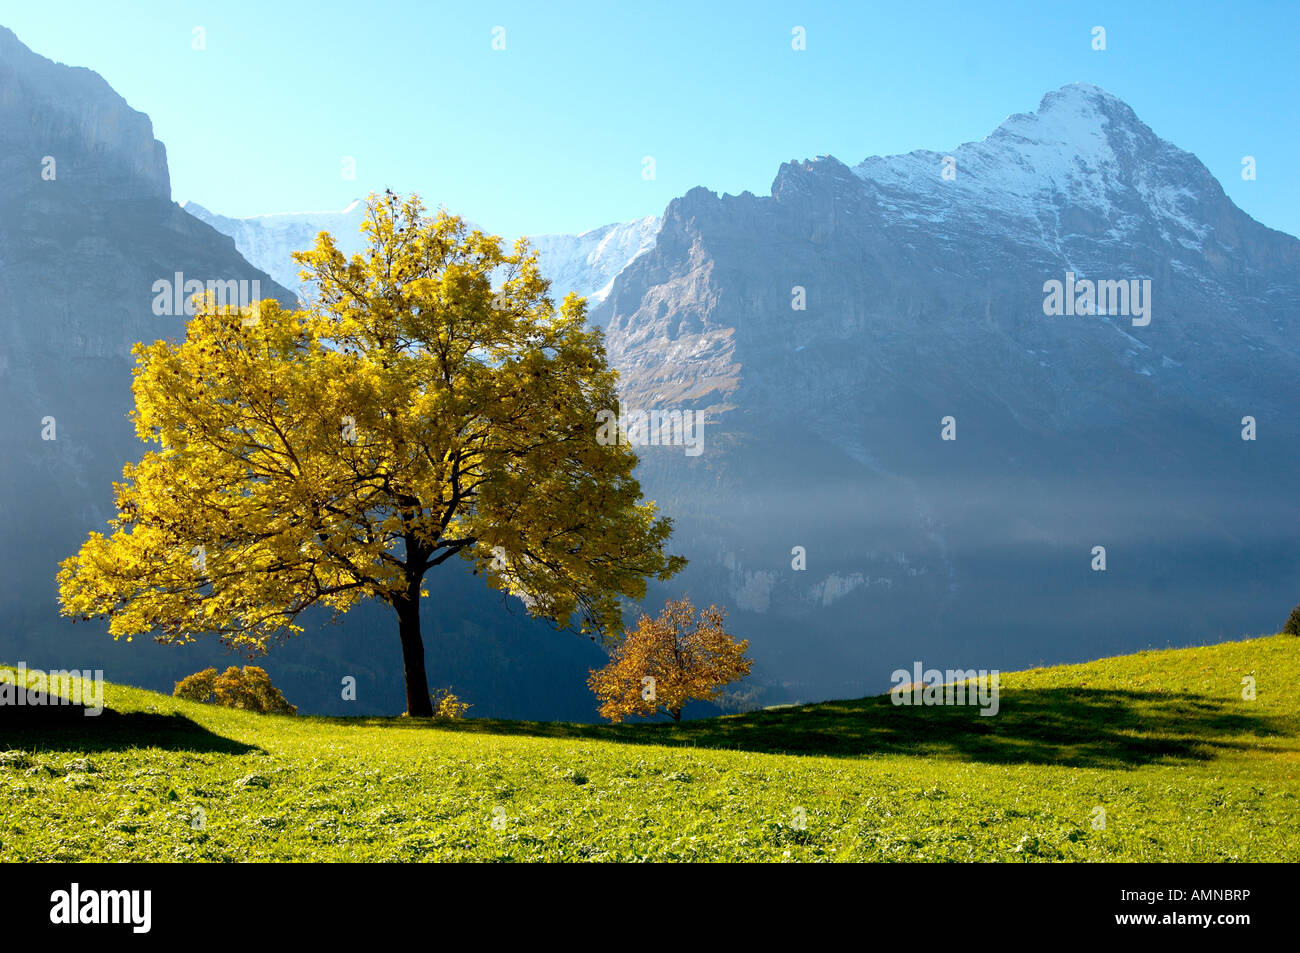 Herbst Baum mit Eiger. Grindelwald, Berner Oberland, Schweizer Alpen,  Schweiz Stockfotografie - Alamy